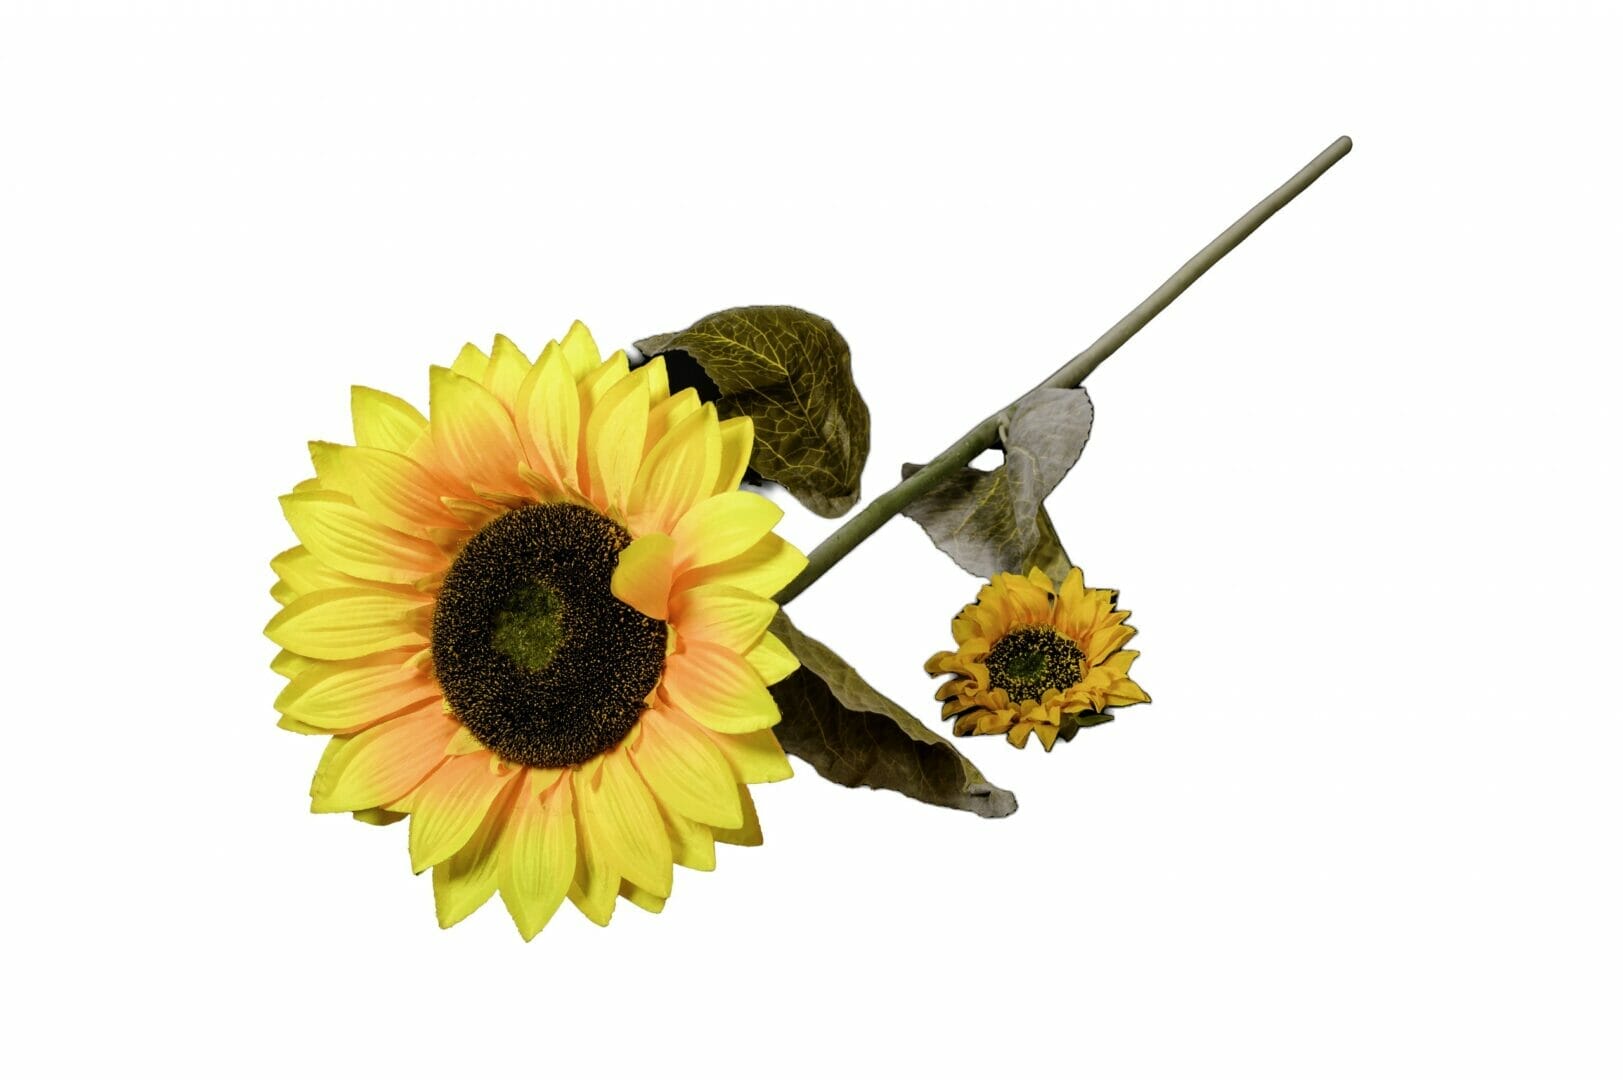 artificial sunflower